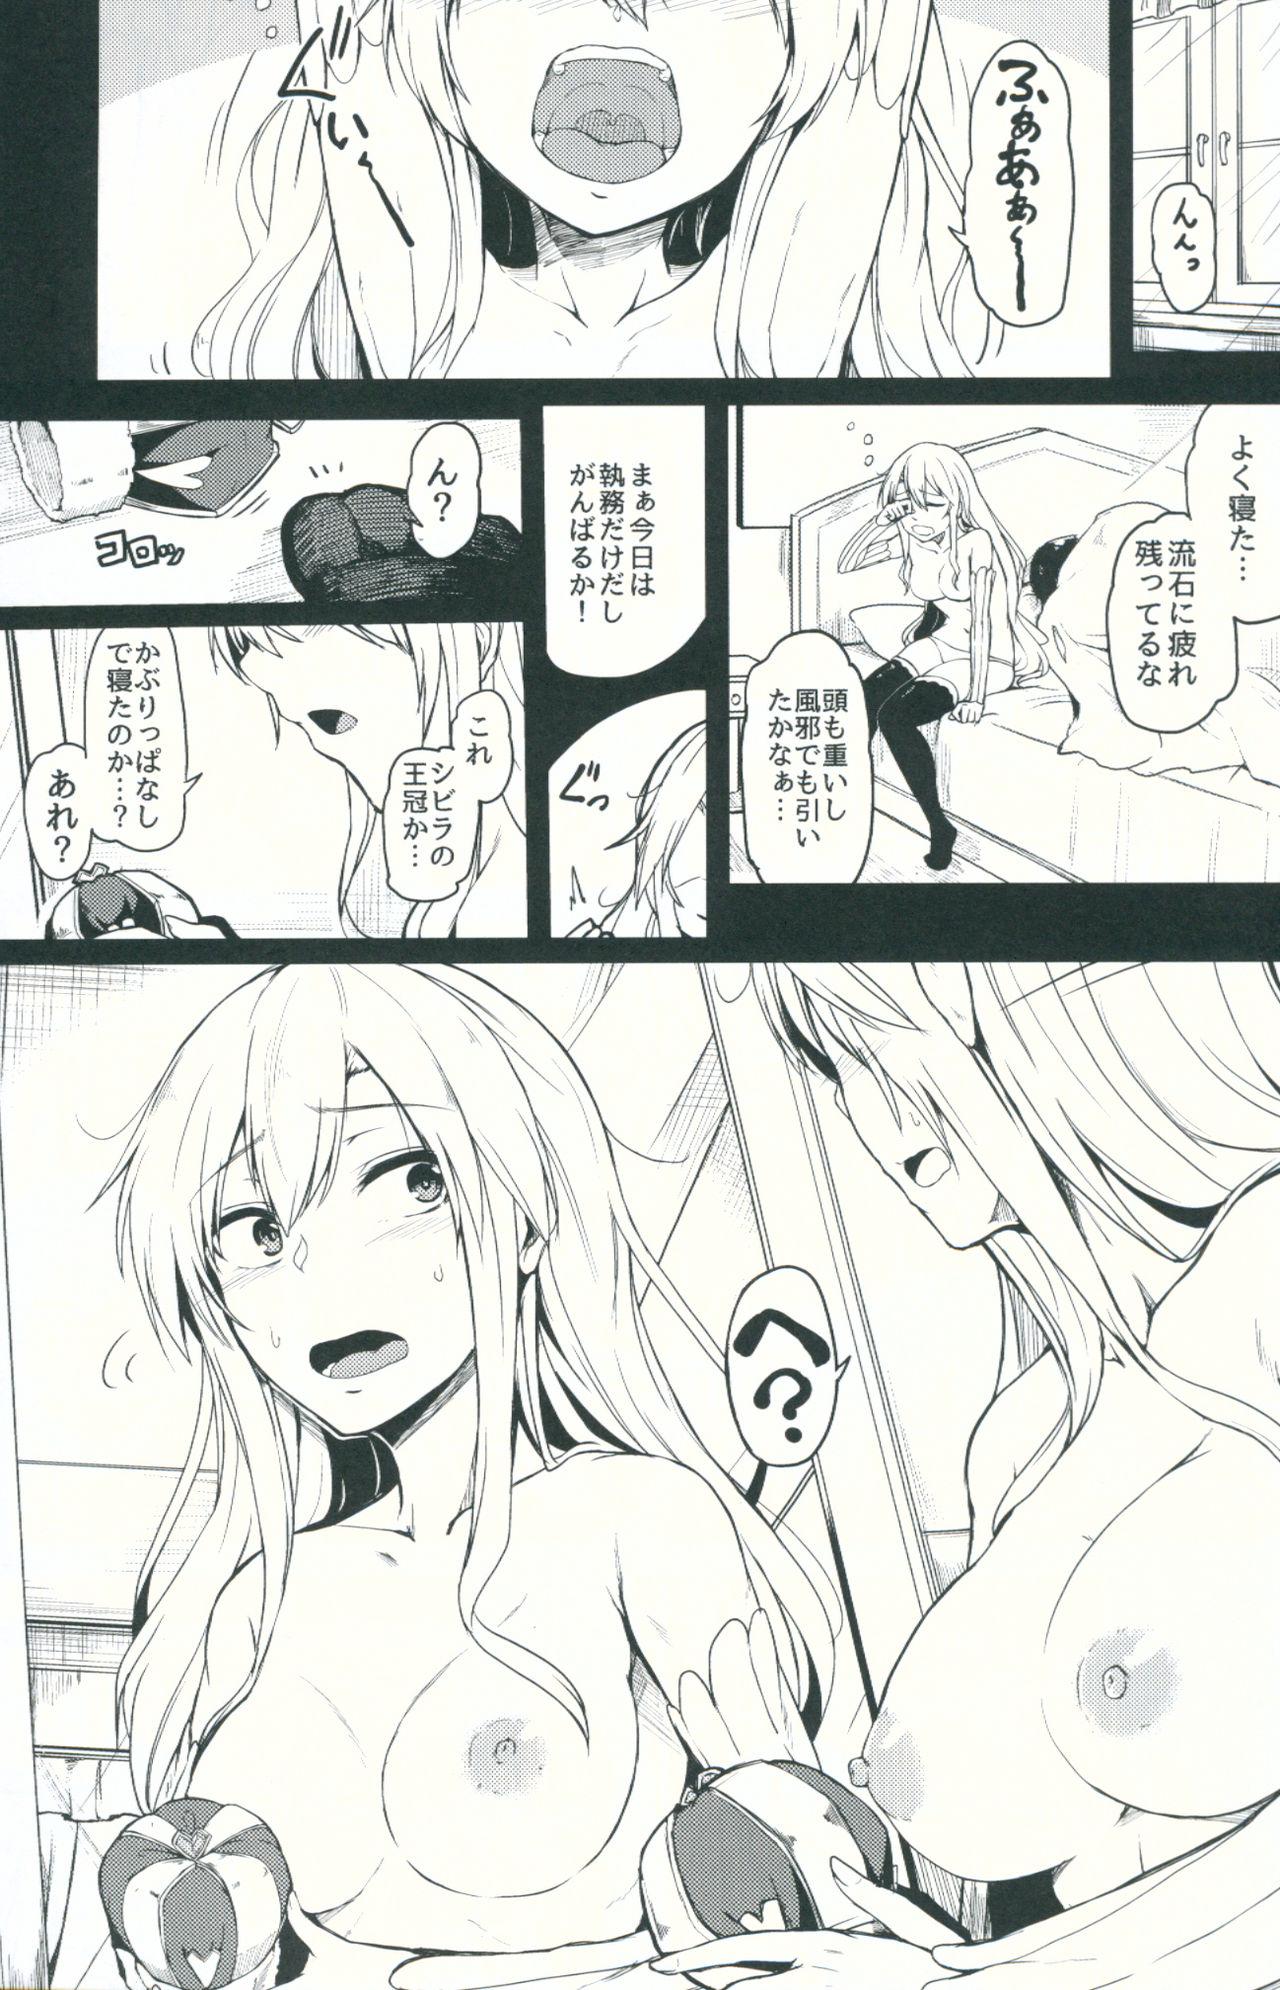 Milk Change Prince & Princess - Sennen sensou aigis Soft - Page 2